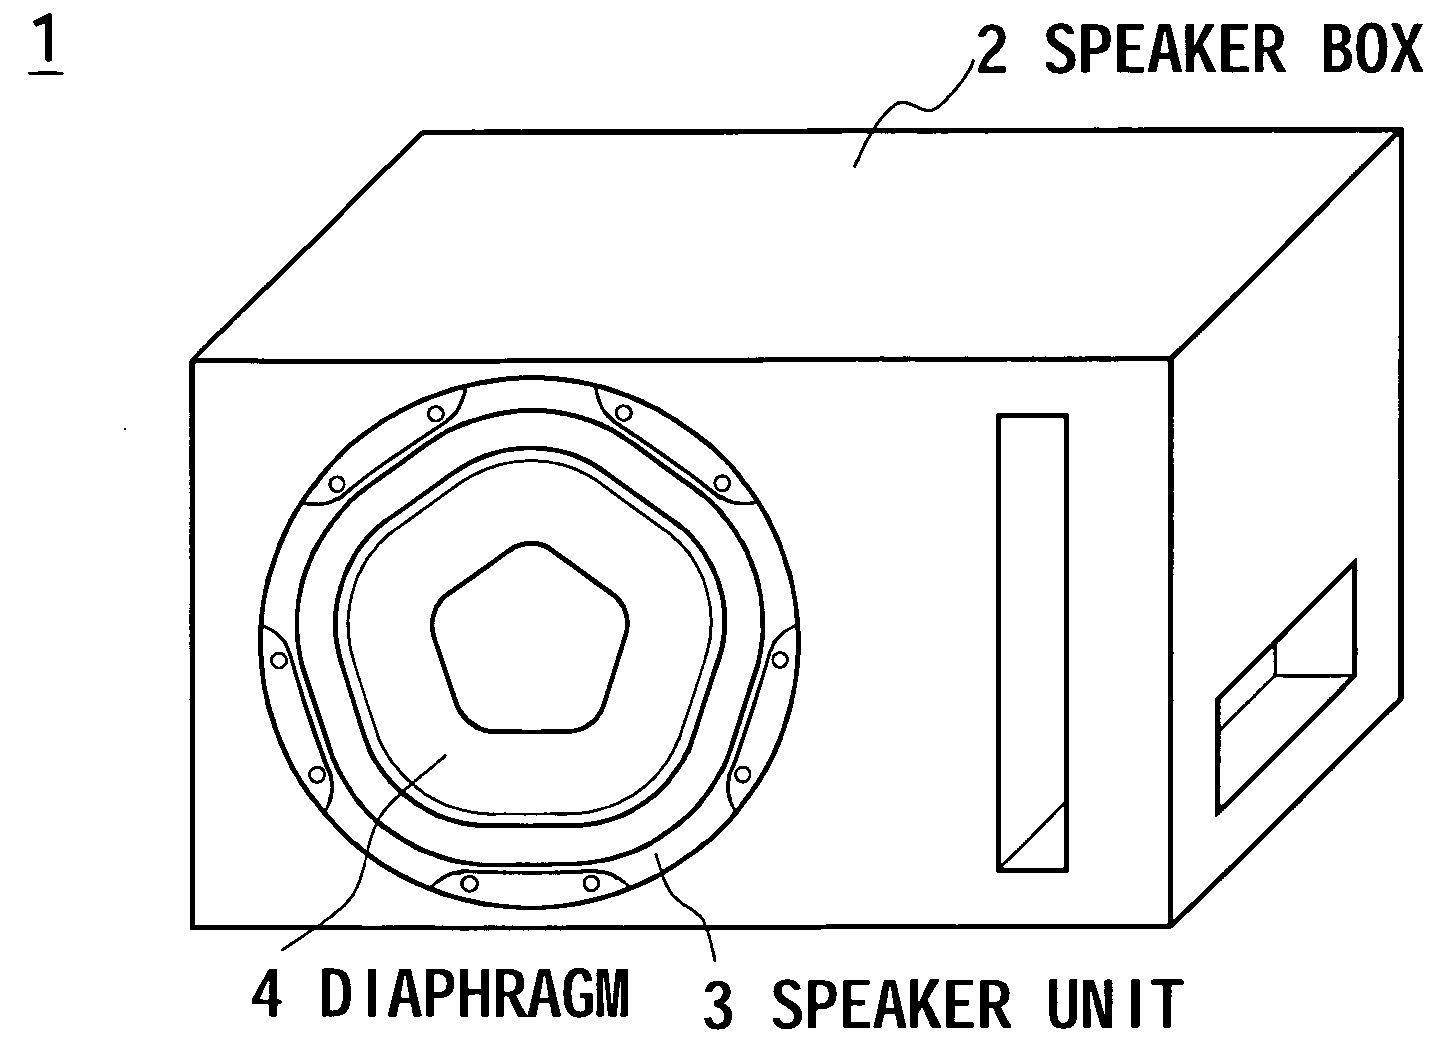 Speaker diaphragm, speaker unit and speaker apparatus